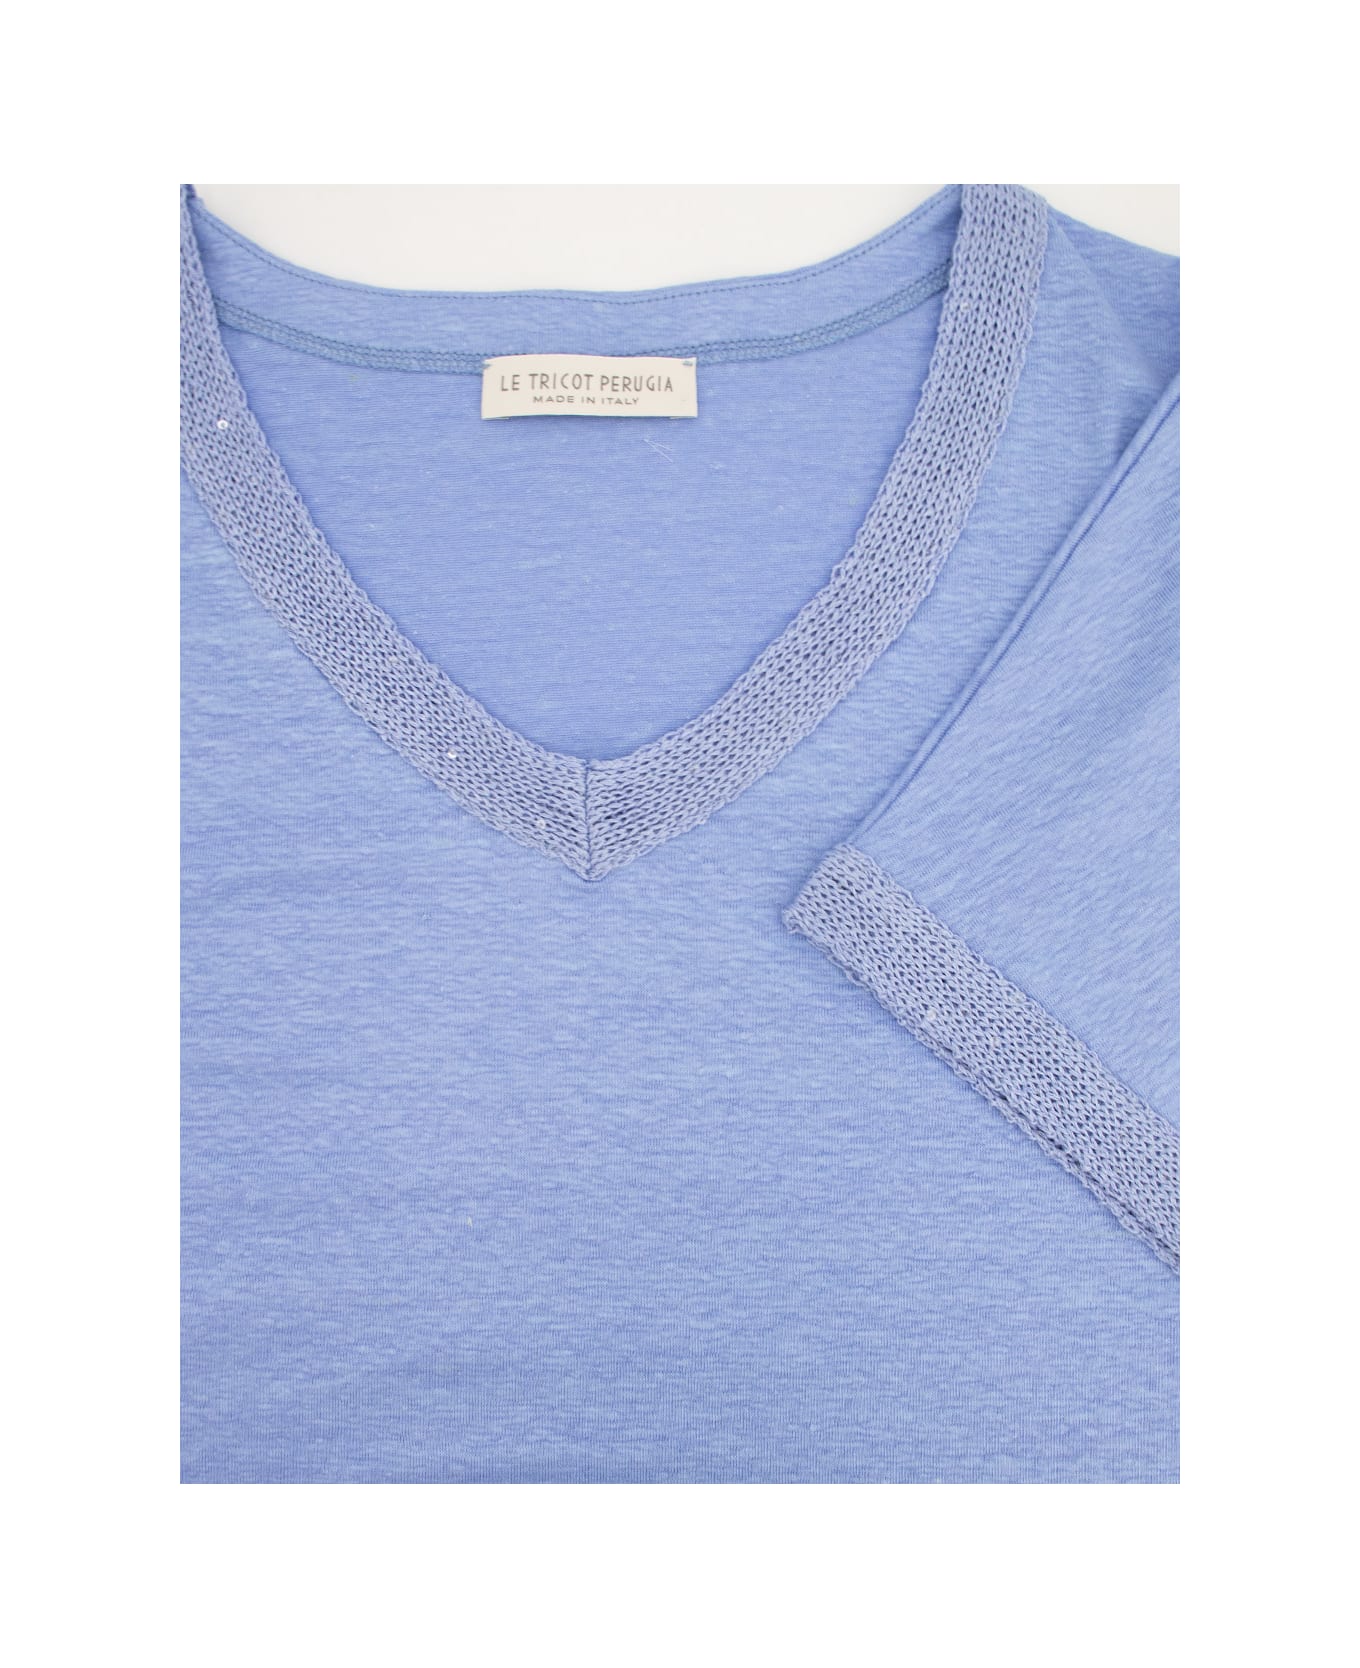 Le Tricot Perugia T-shirt - BLUE